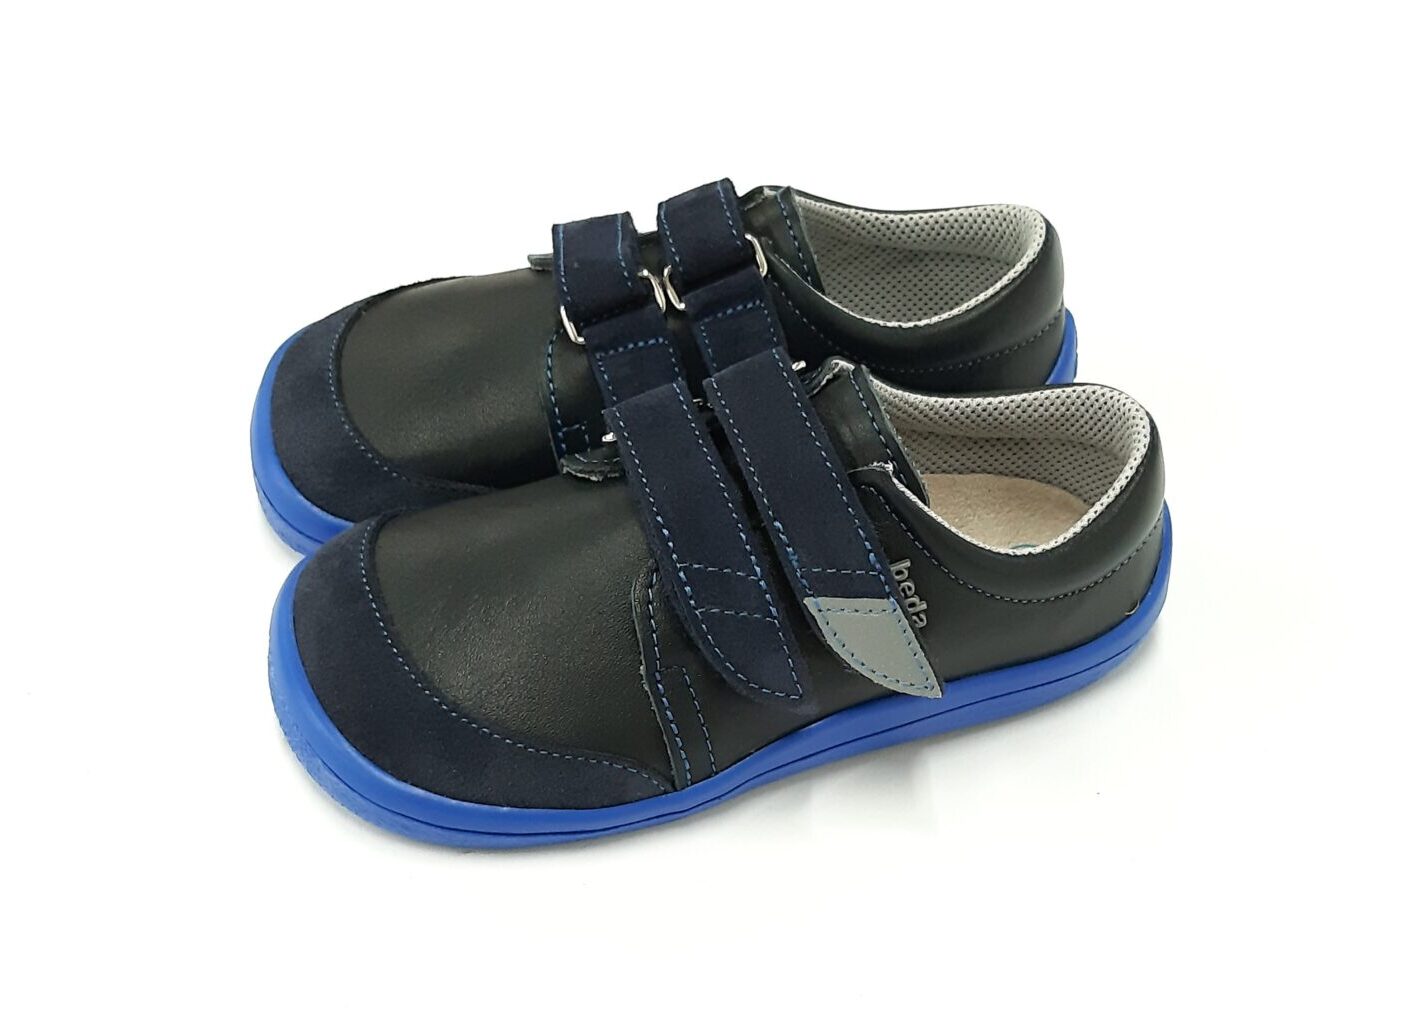 Beda lahtised sandaalid Grey Laste barefoot jalatsid - HellyK - Kvaliteetsed lasteriided, villariided, barefoot jalatsid